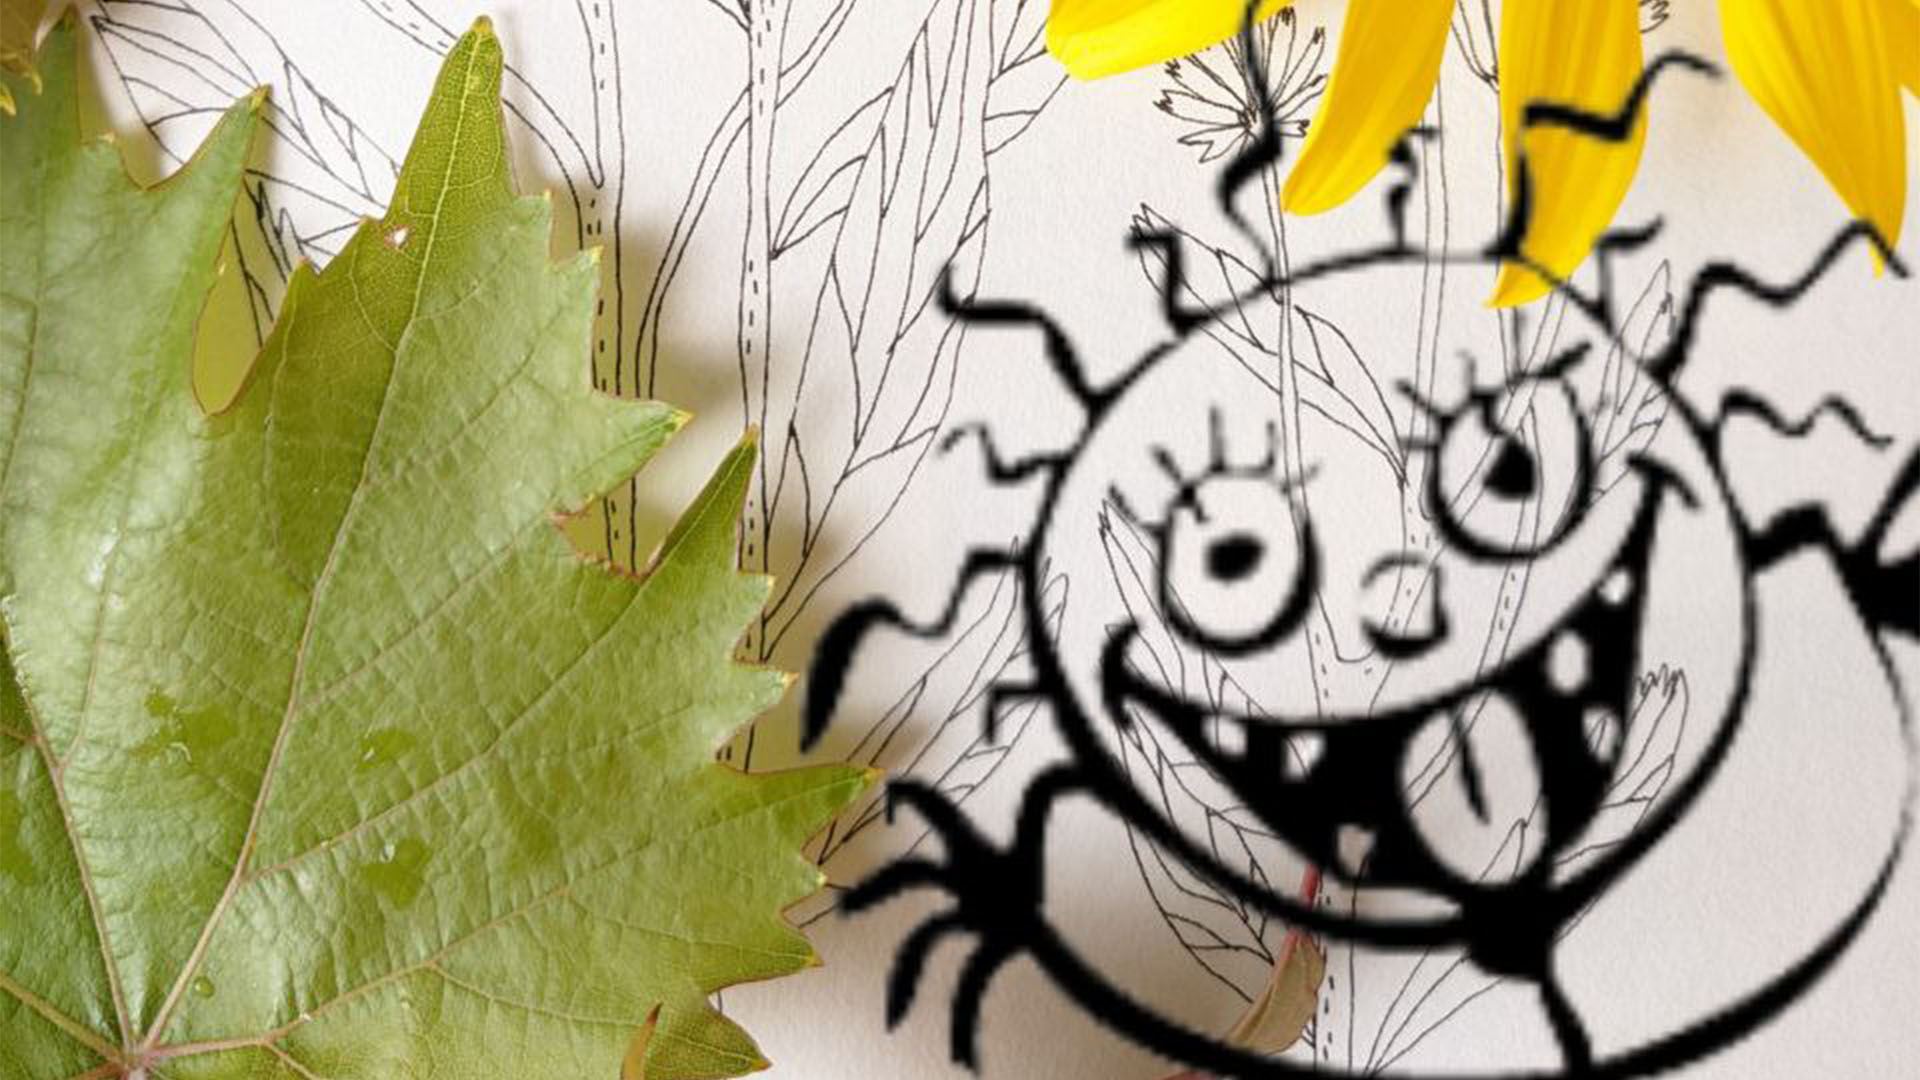 auf einem Blatt Papier mit einem gezeichnetem kleinem Monster liegt ein Ahornblatt.